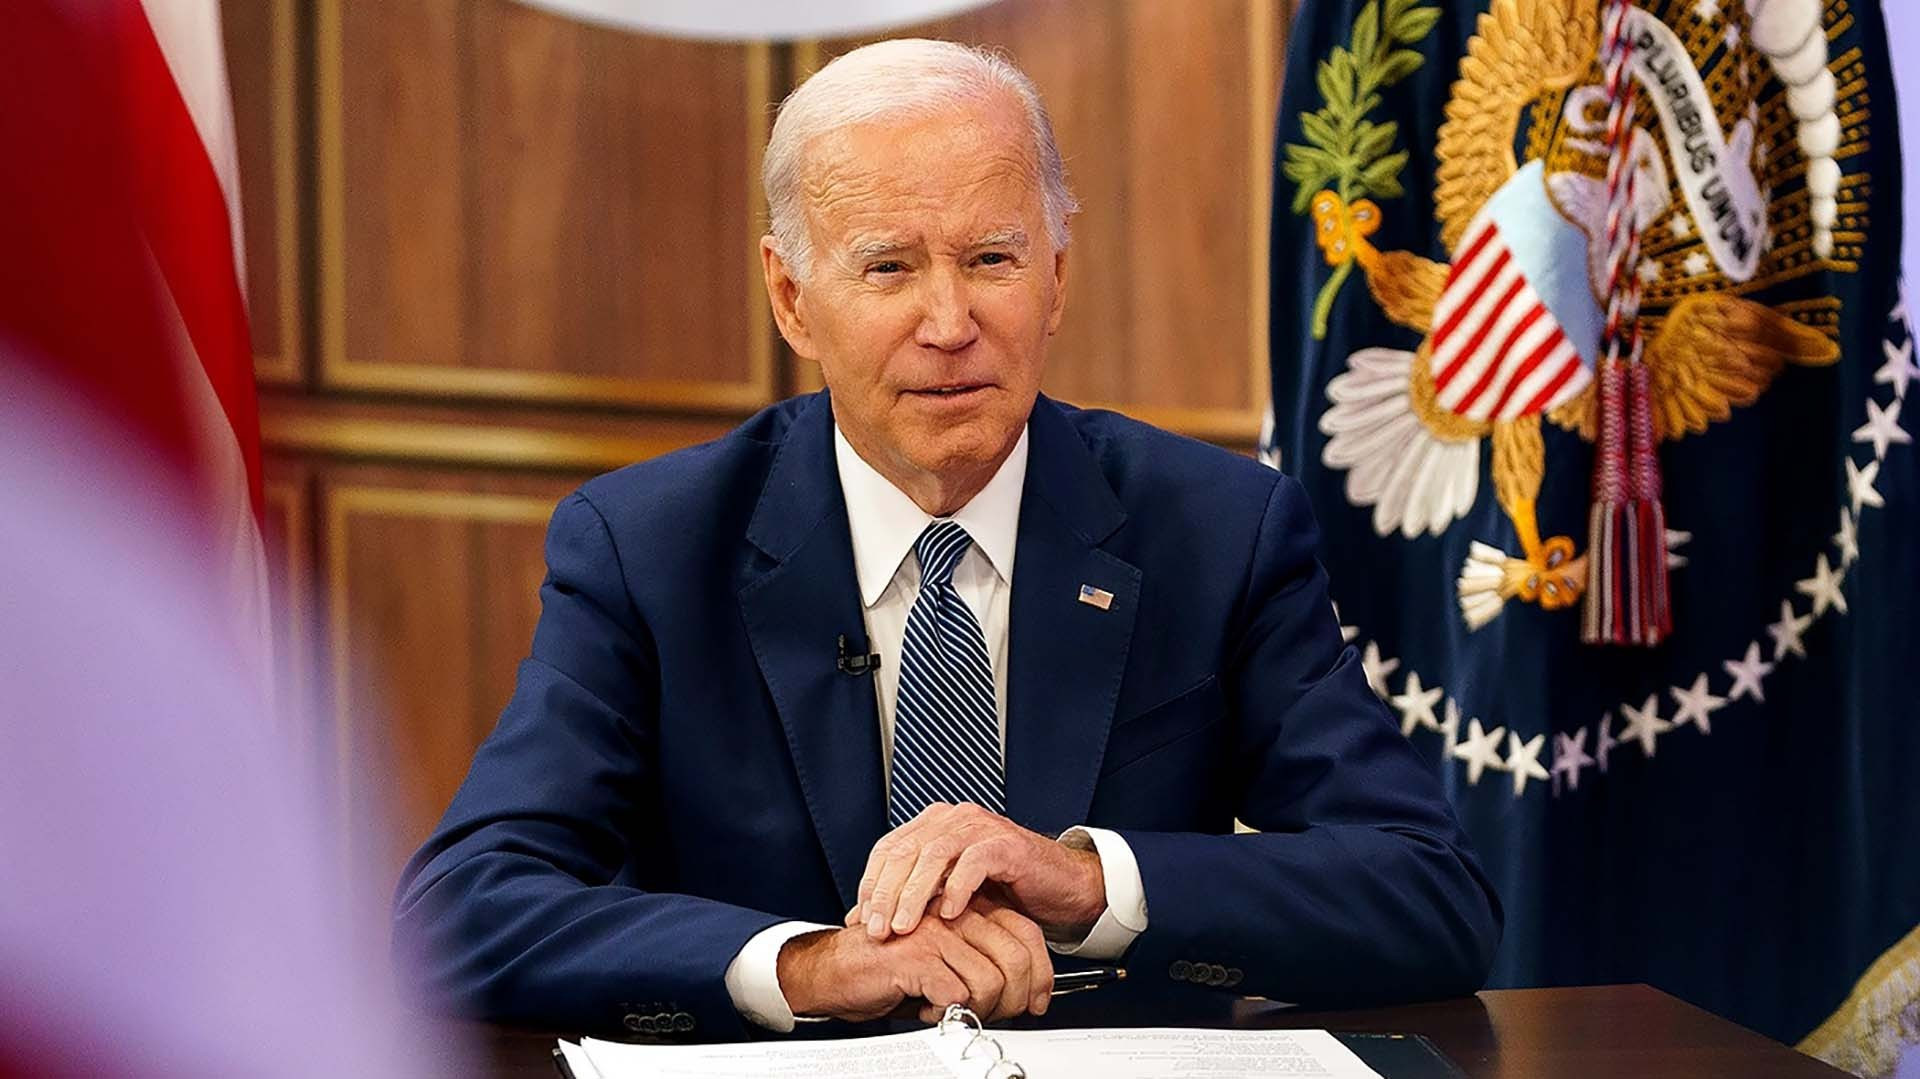 Chính quyền Tổng thống Mỹ Joe Biden công bố Chiến lược An ninh quốc gia mới sau khi ra mắt Hướng dẫn Chiến lược An ninh quốc gia tạm thời hồi tháng 3/2021. (Nguồn: The Hill)